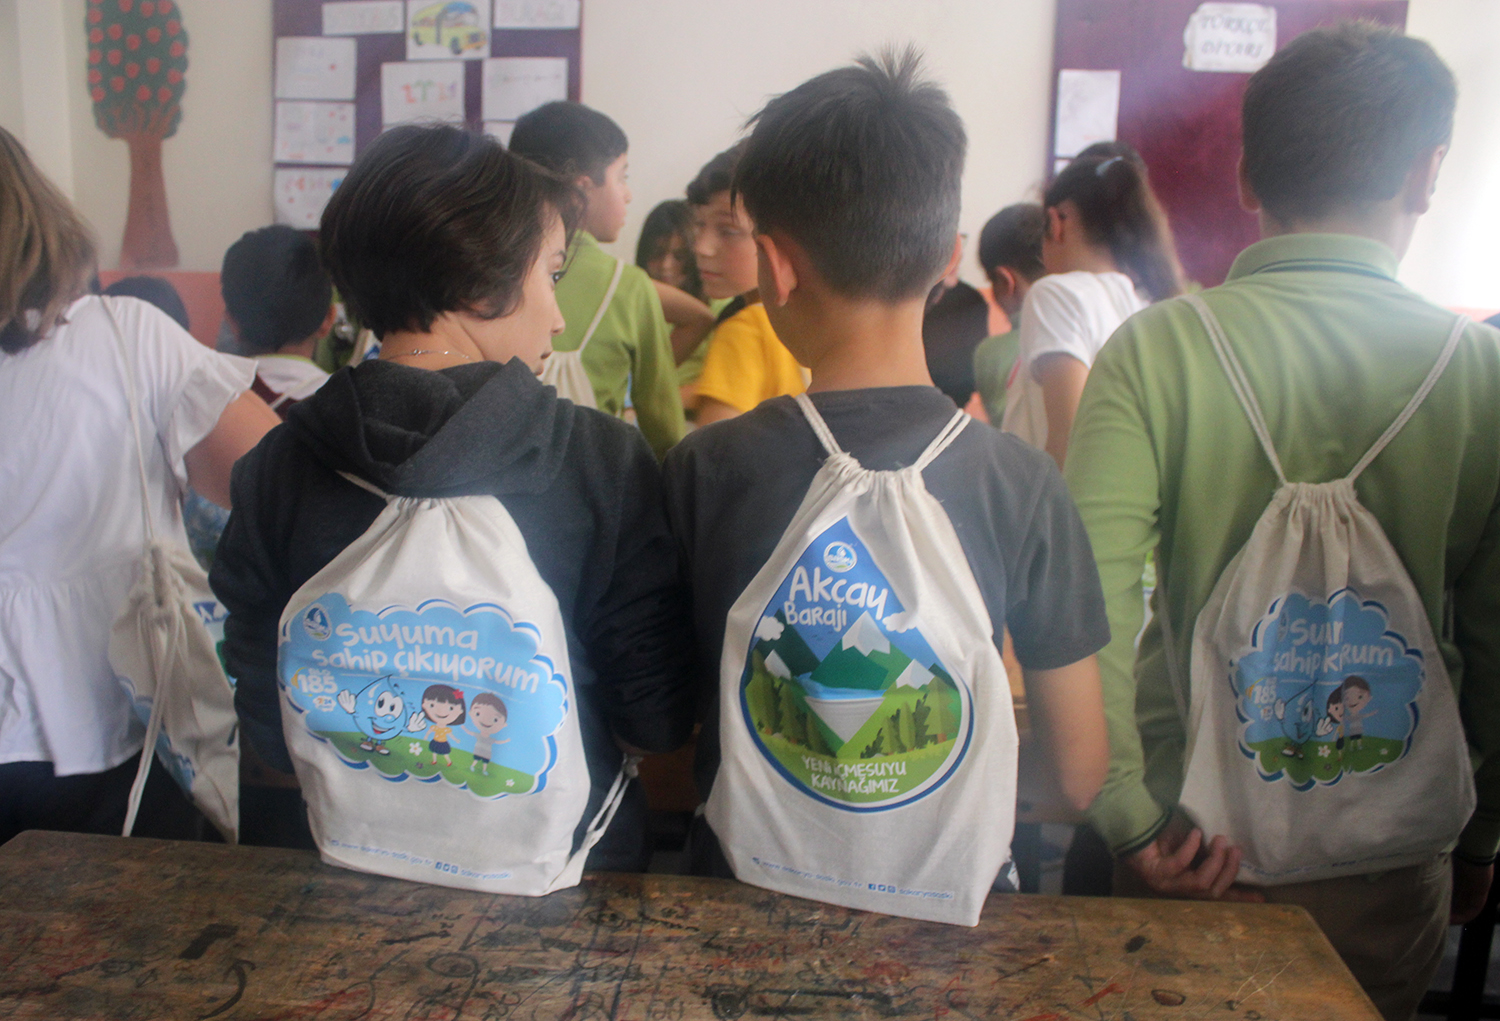 Eğitim çantaları da çevreci yaklaşımın ürünü